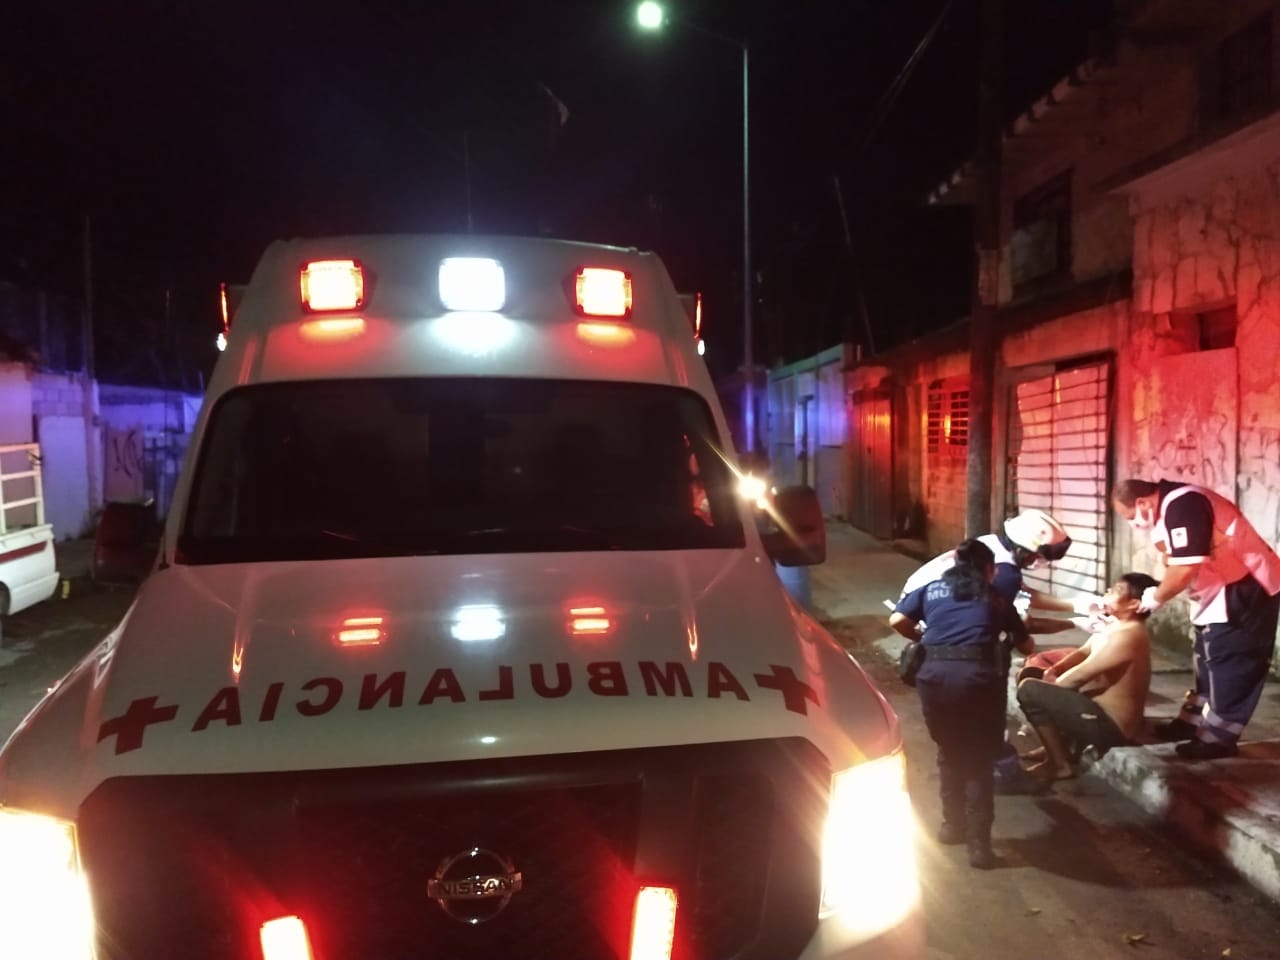 Al lugar llegaron paramédicos de la Cruz Roja quienes valoraron las heridas. Foto: Jazmín Rodríguez